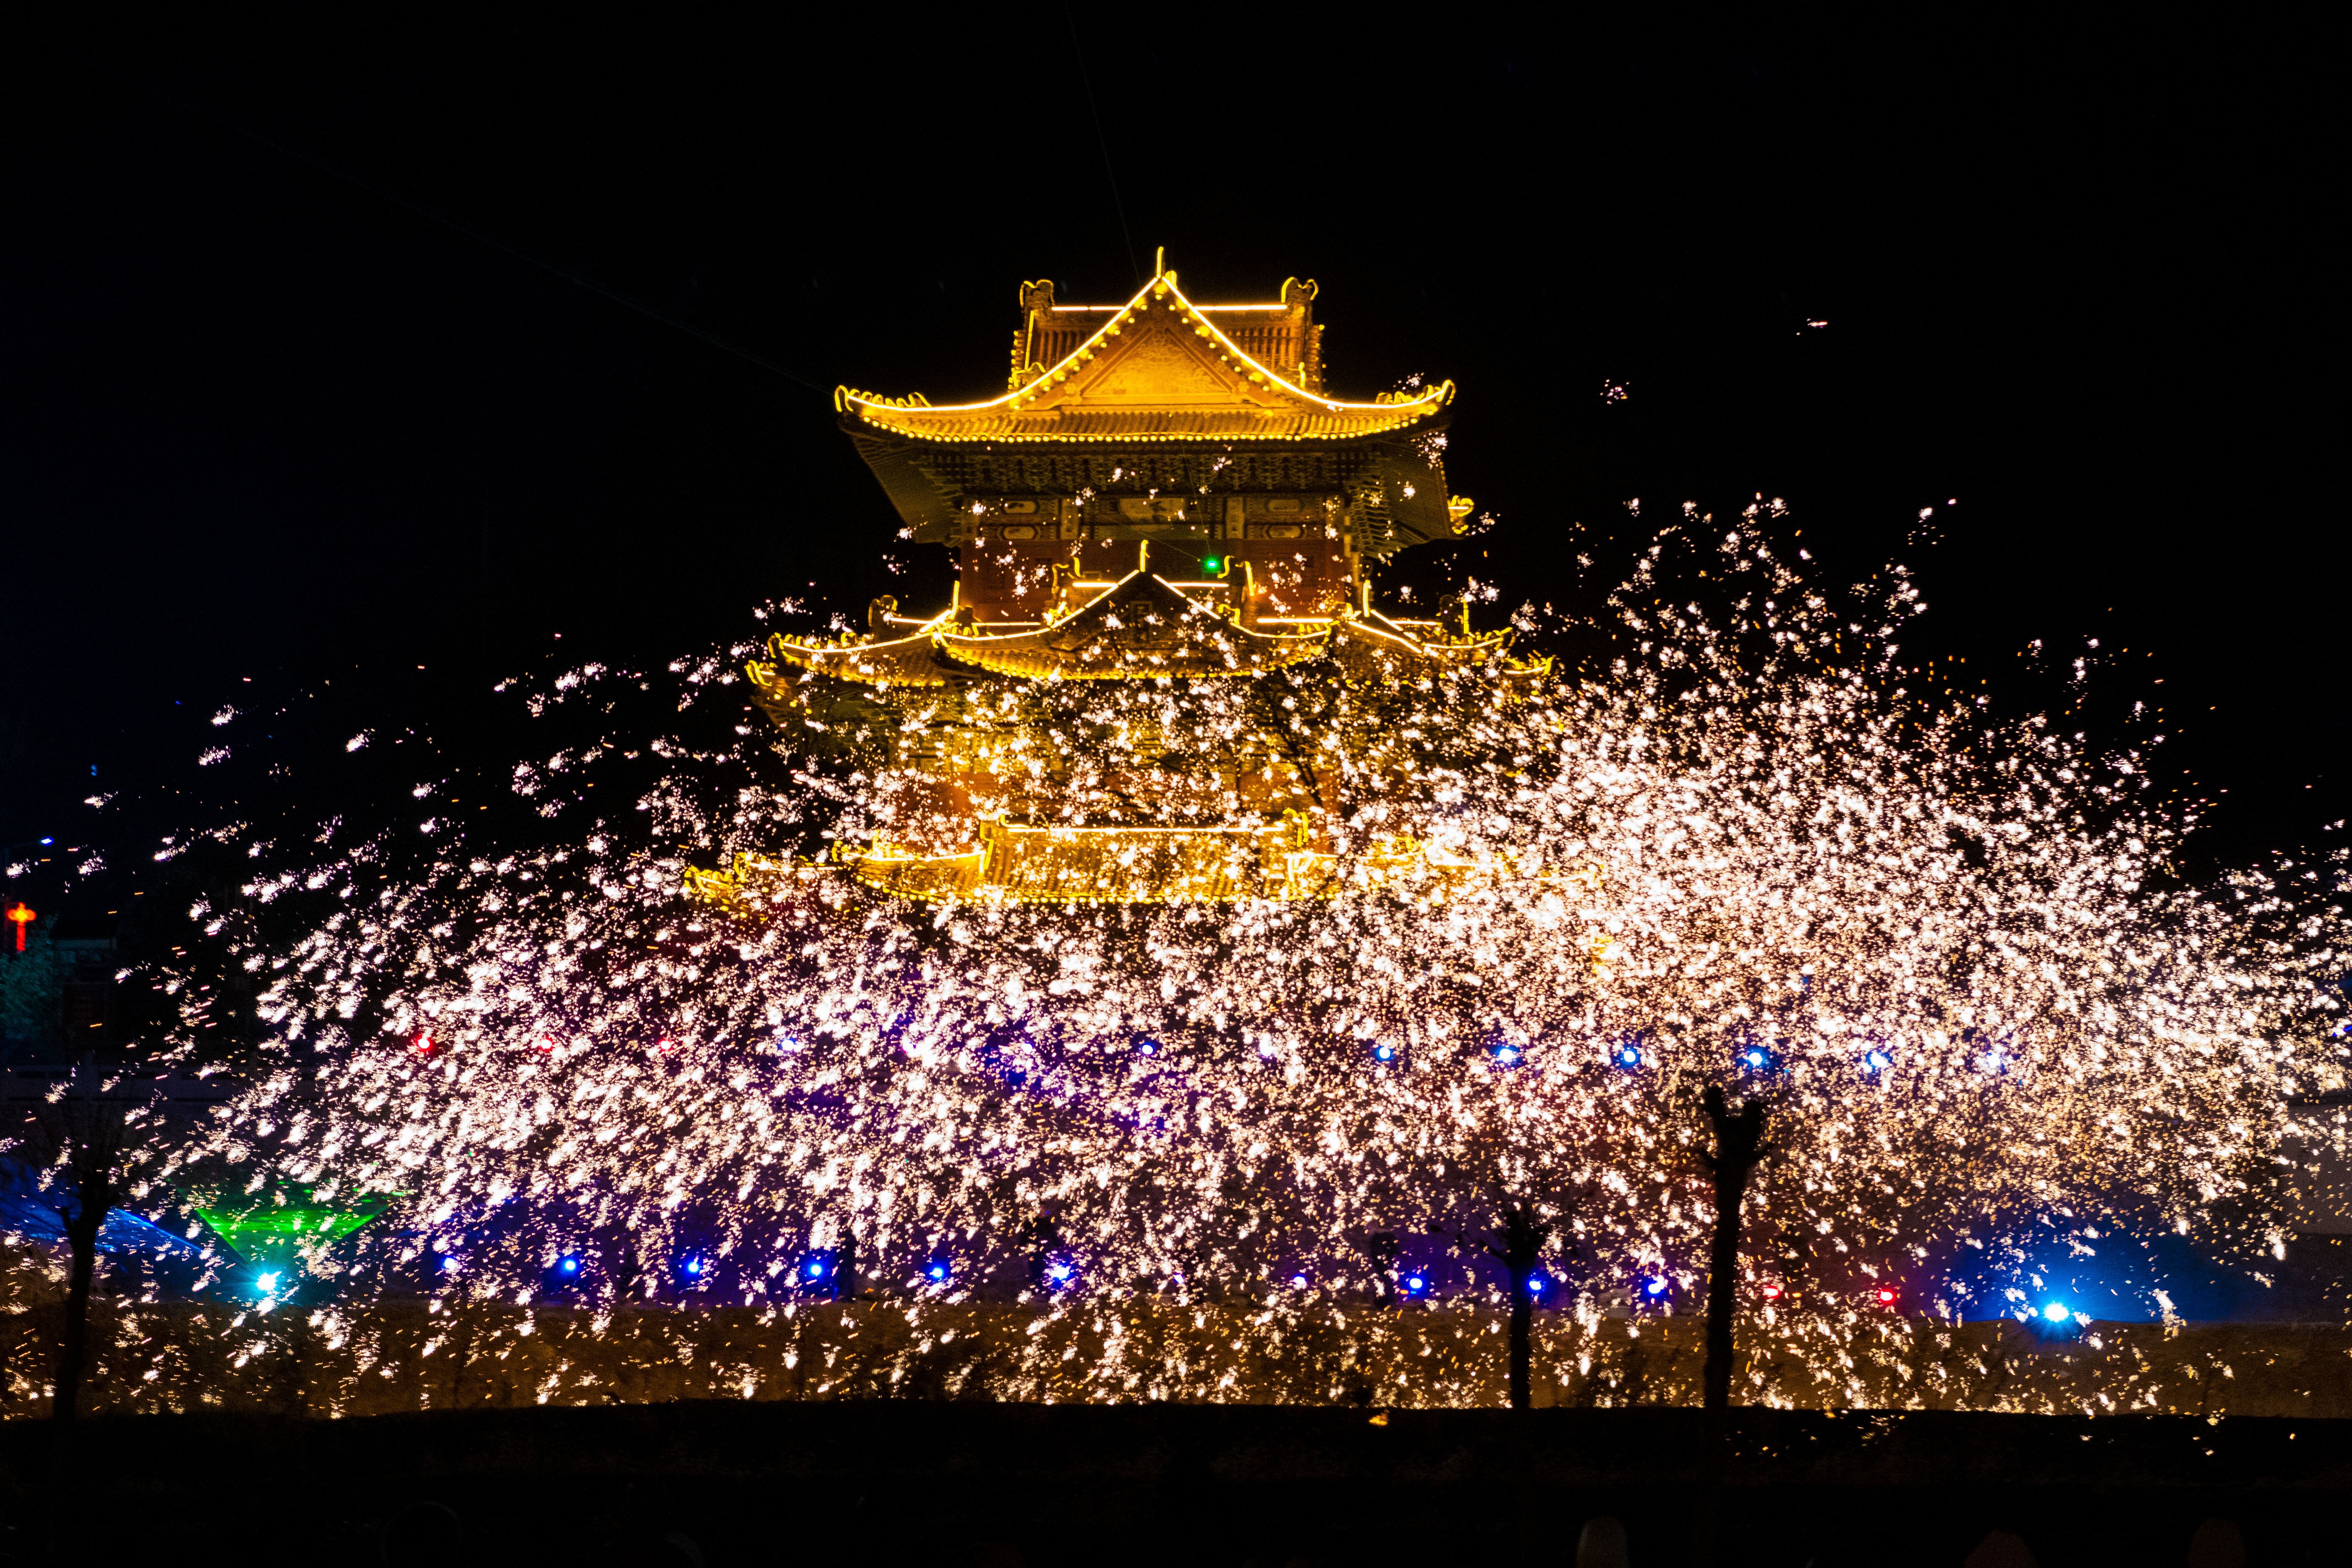 《打铁花》打铁花是一种中国传统民间艺术表演形式，通过将铁水抛向空中，击打成千上万的火花，形成壮观的火树银花。